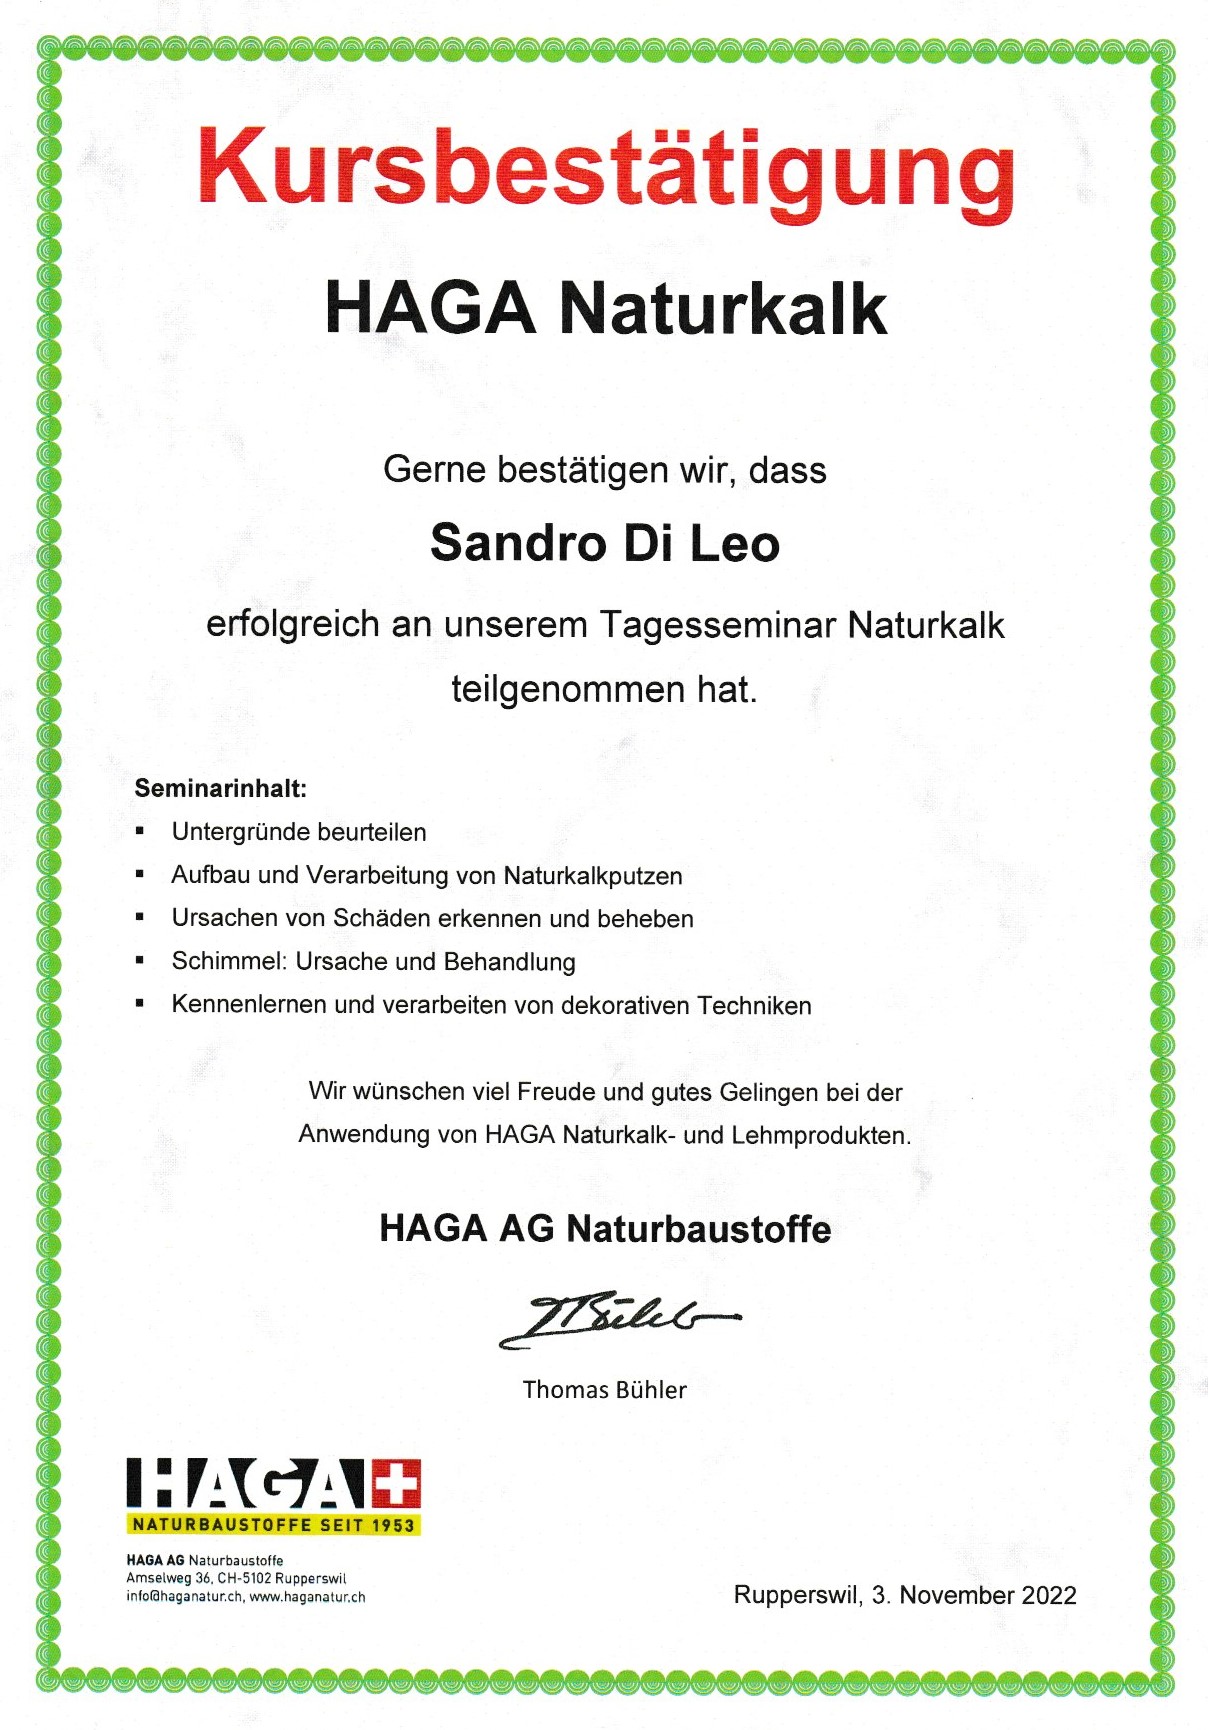 HAGA Naturkalk November 2022